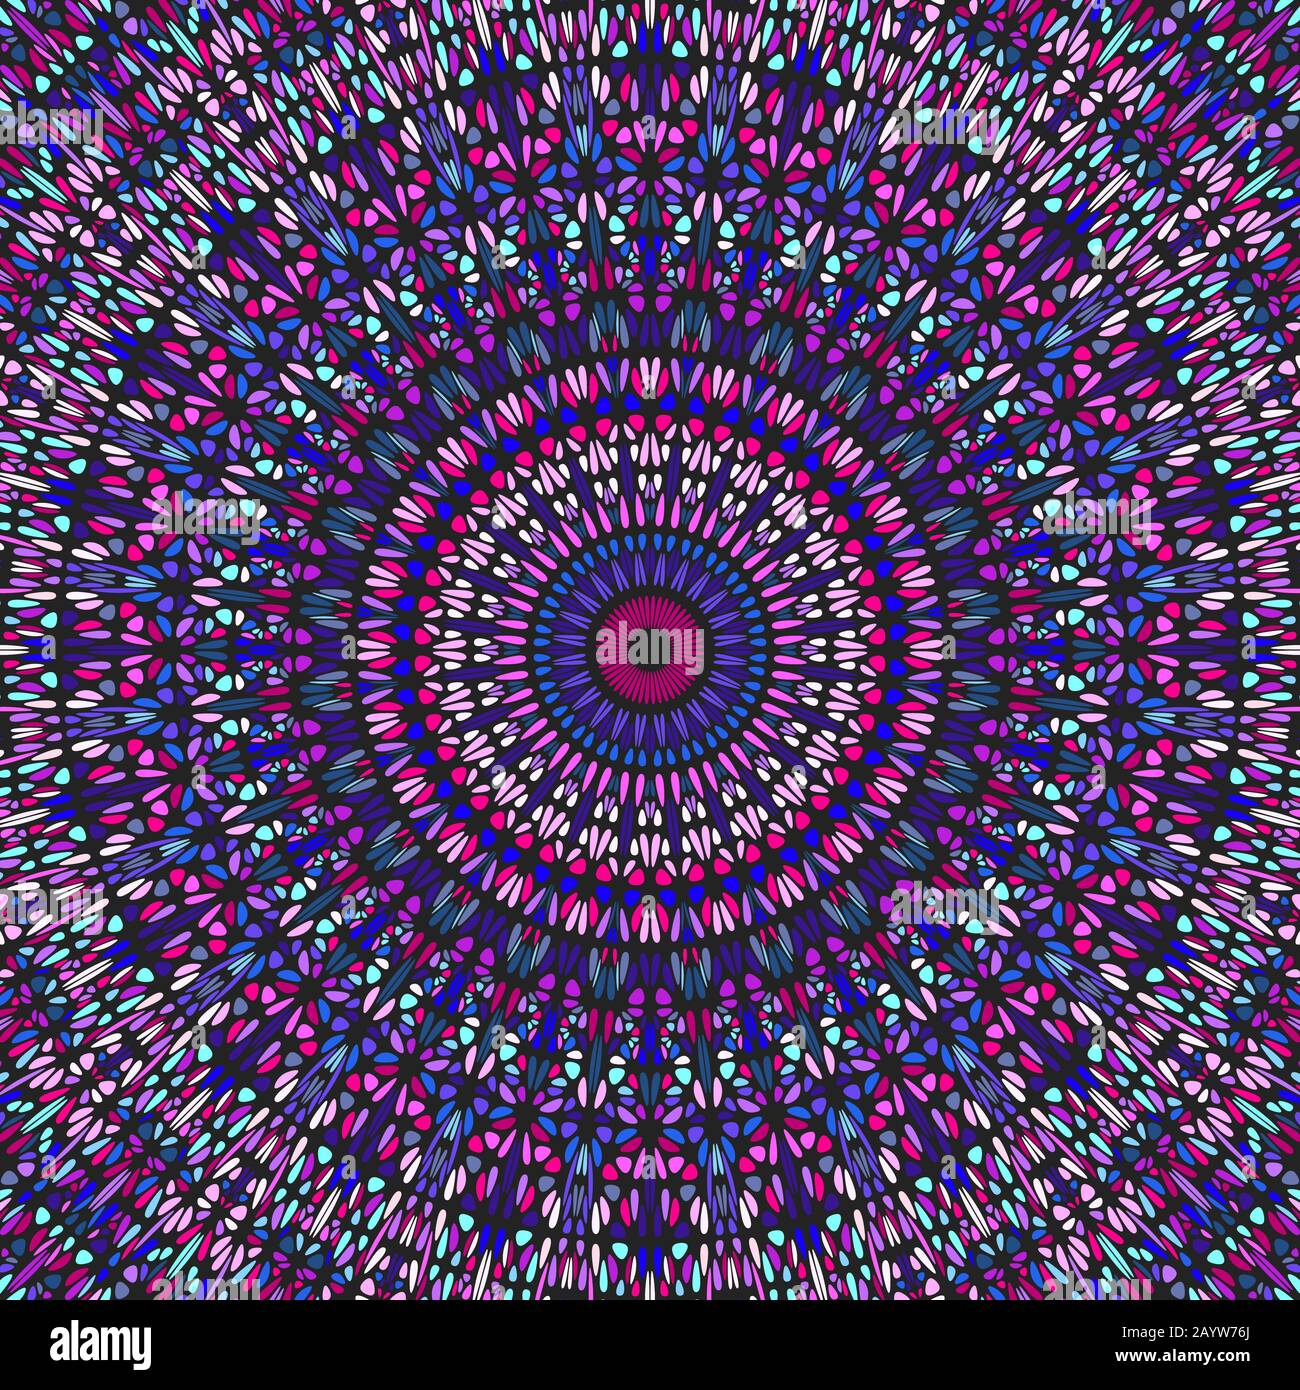 Psychedelischer geometrischer Blumenschmuck Mandala-Hintergrund - abstraktes hypnotisches buntes, geblümtes kreisförmiges Vektordesign Stock Vektor